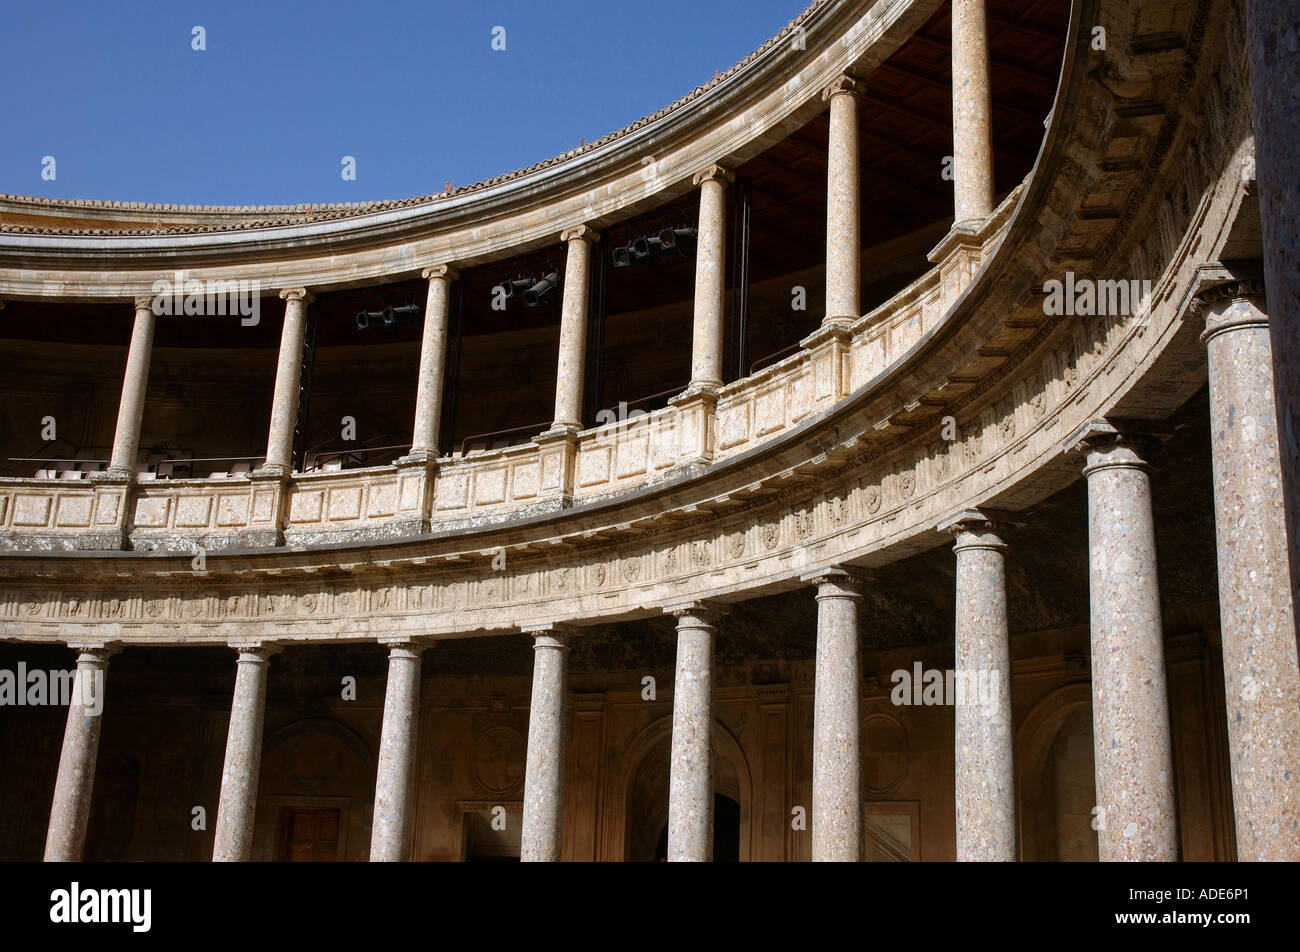 Vue sur l'Alhambra et Grenade andalousie andalousie forteresse Alcazaba España Espagne Iberia Europe Banque D'Images